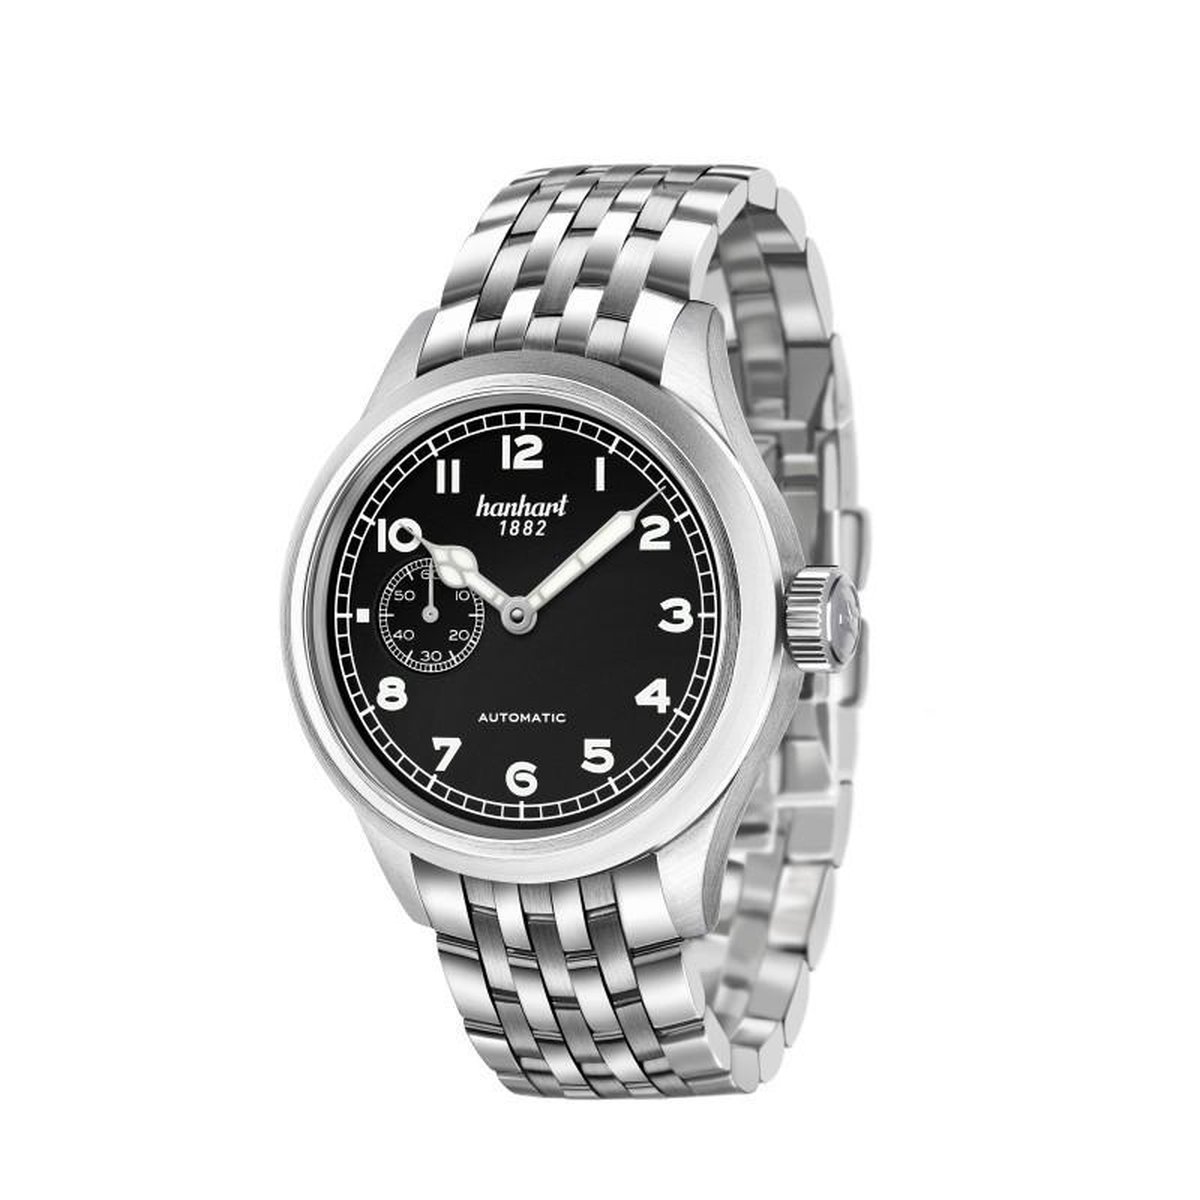 Hanhart Pioneer Preventor9 Horloge Zwart - gladde rand - zilverkleurige band